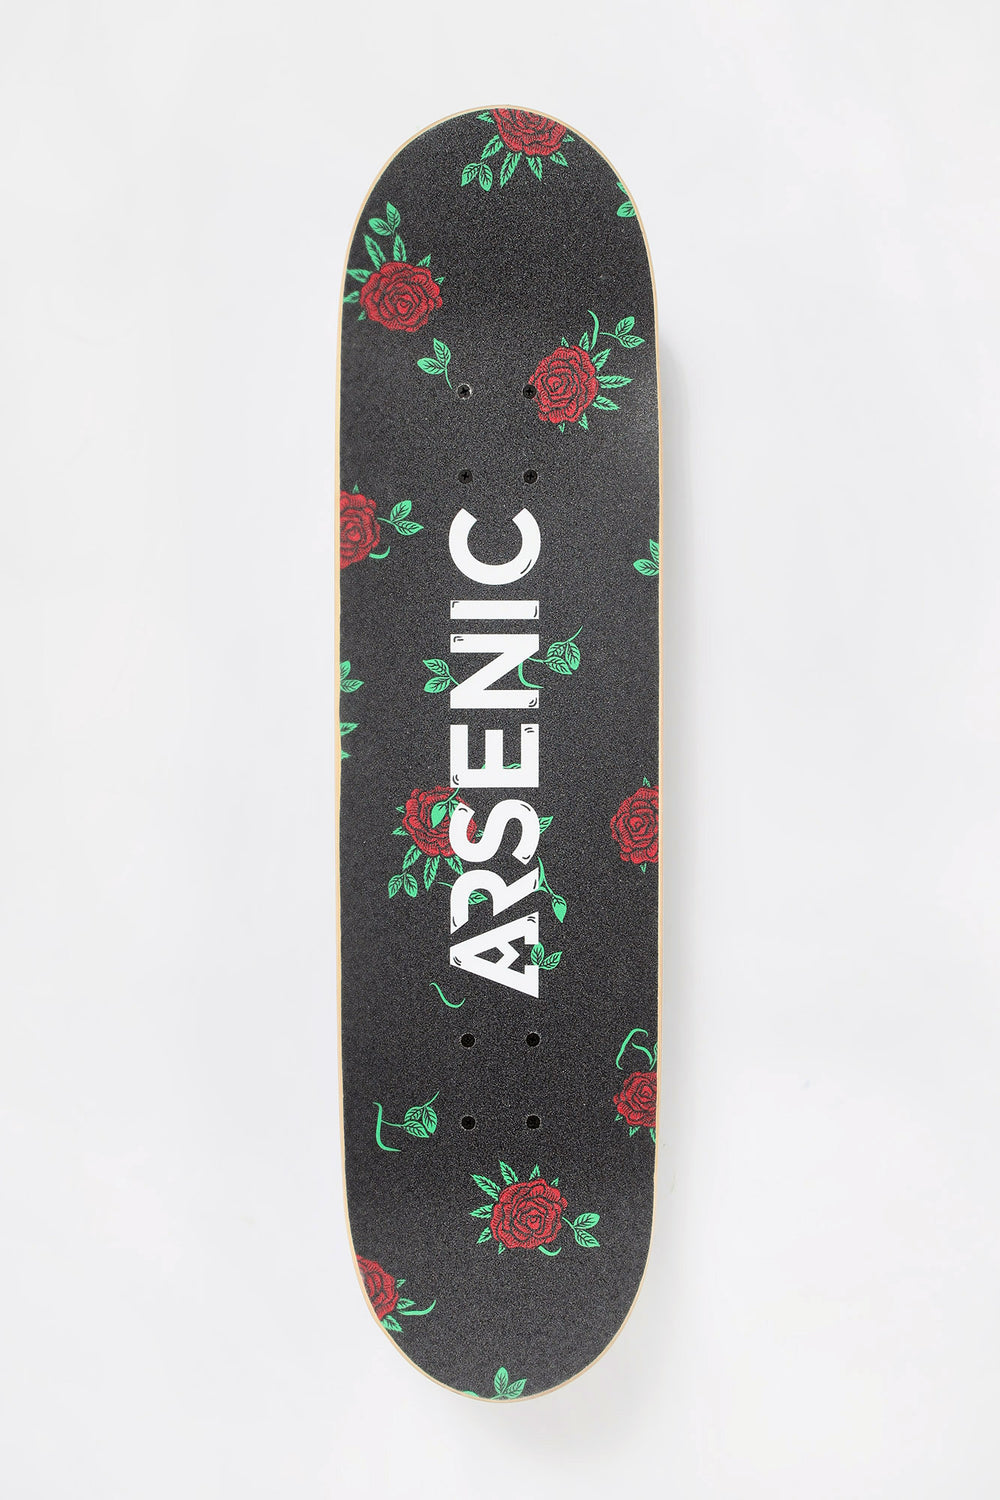 Skateboard Imprimé Crânes & Roses Arsenic 8